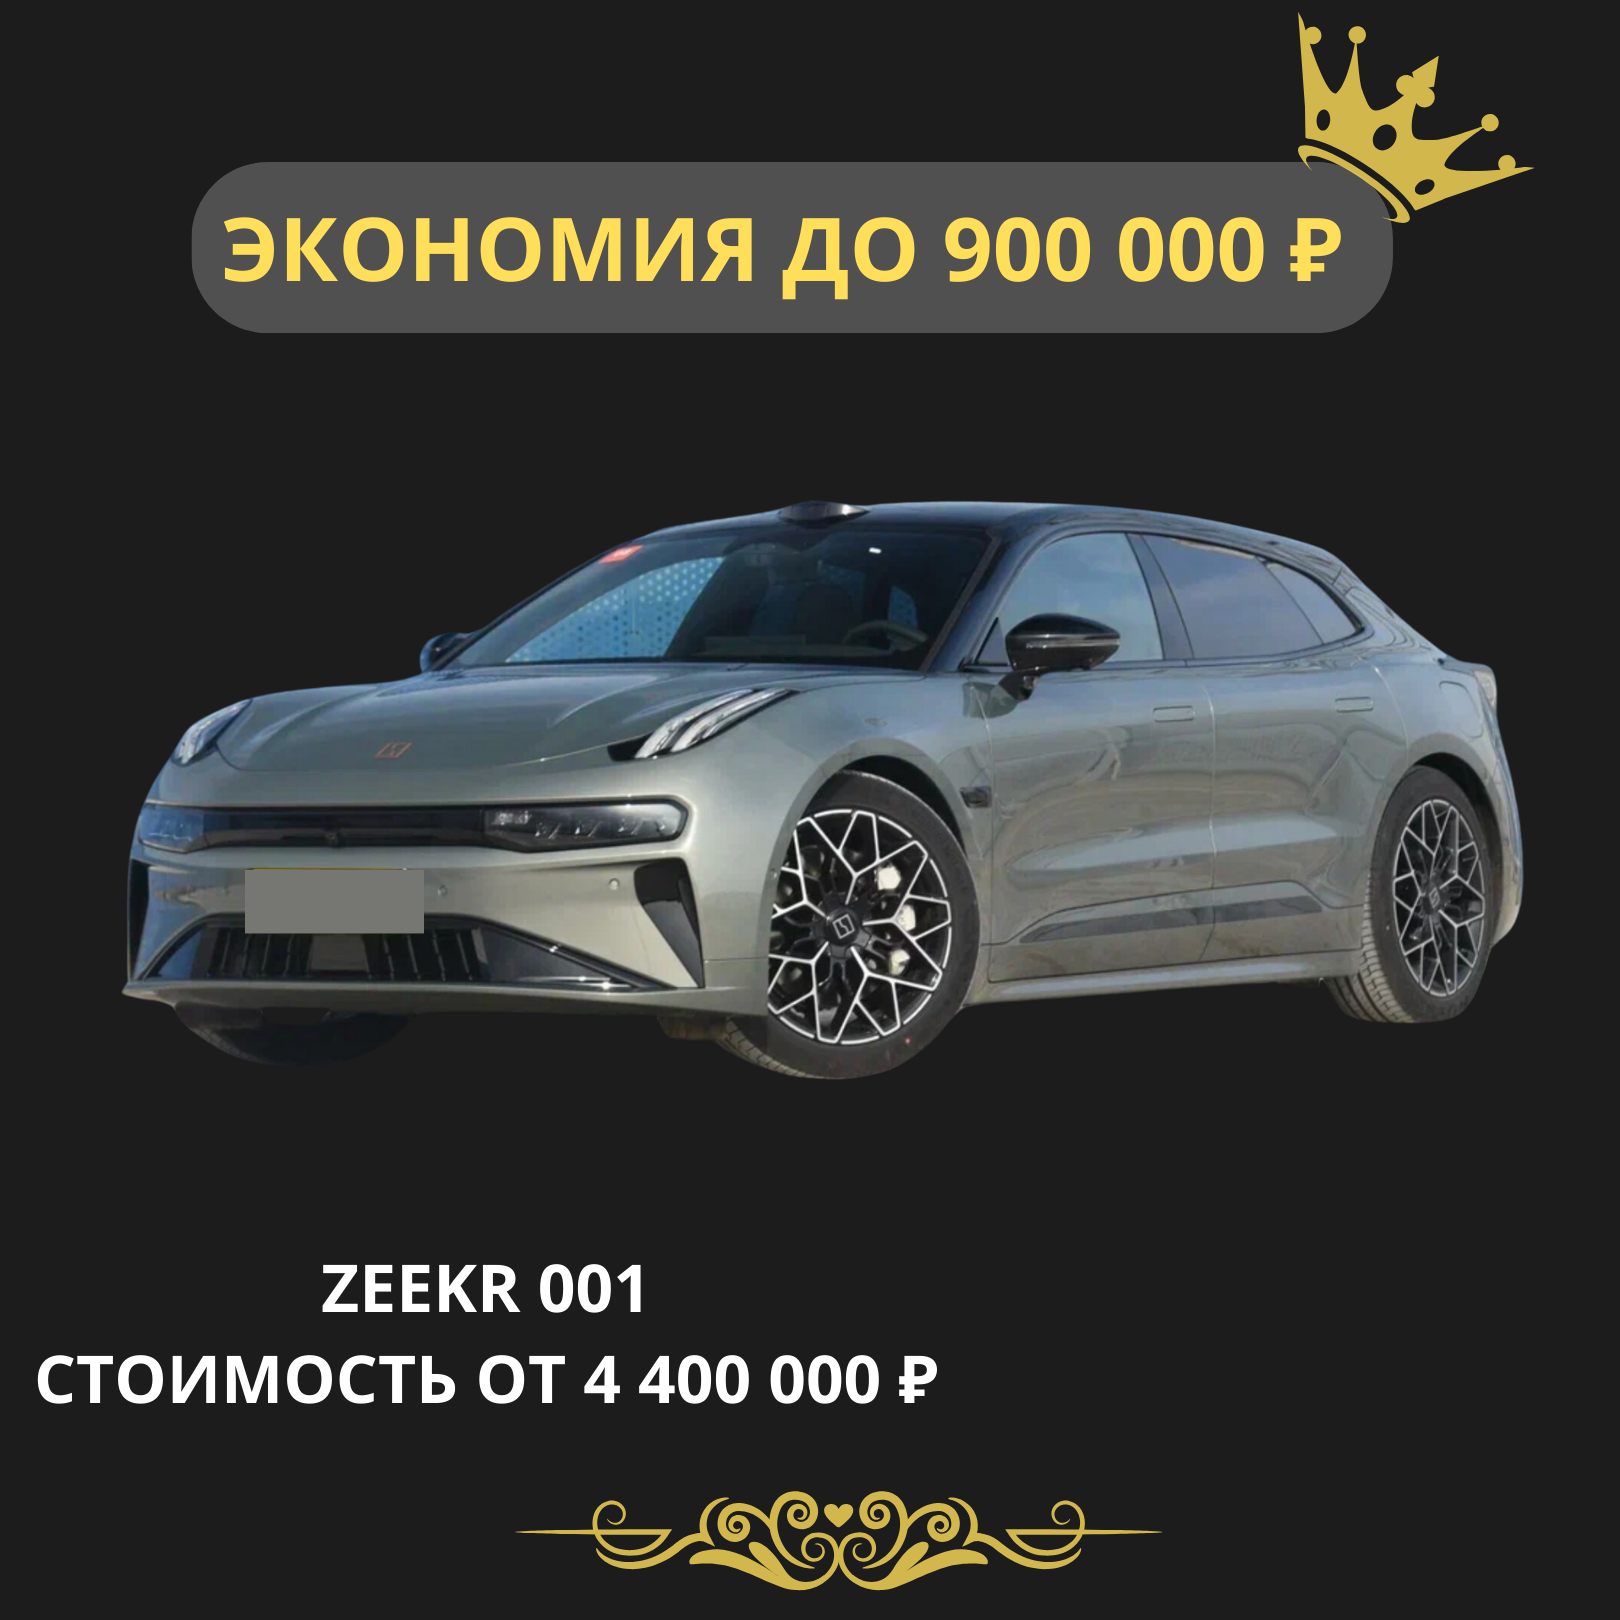 ZEEKR 001. Стоимость от 4 400 000 рублей